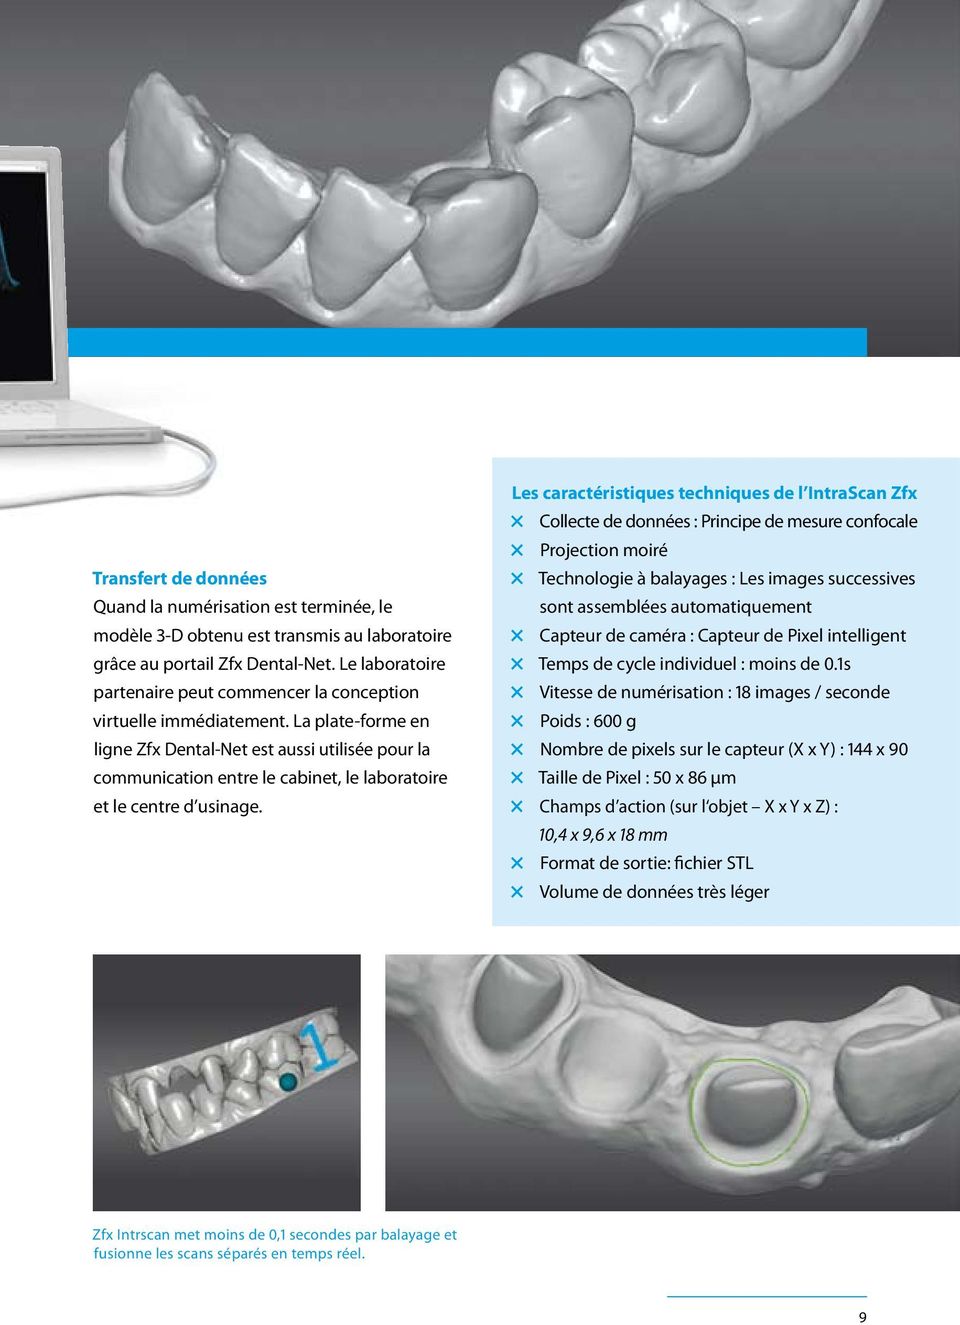 La plate-forme en ligne Zfx Dental-Net est aussi utilisée pour la communication entre le cabinet, le laboratoire et le centre d usinage.